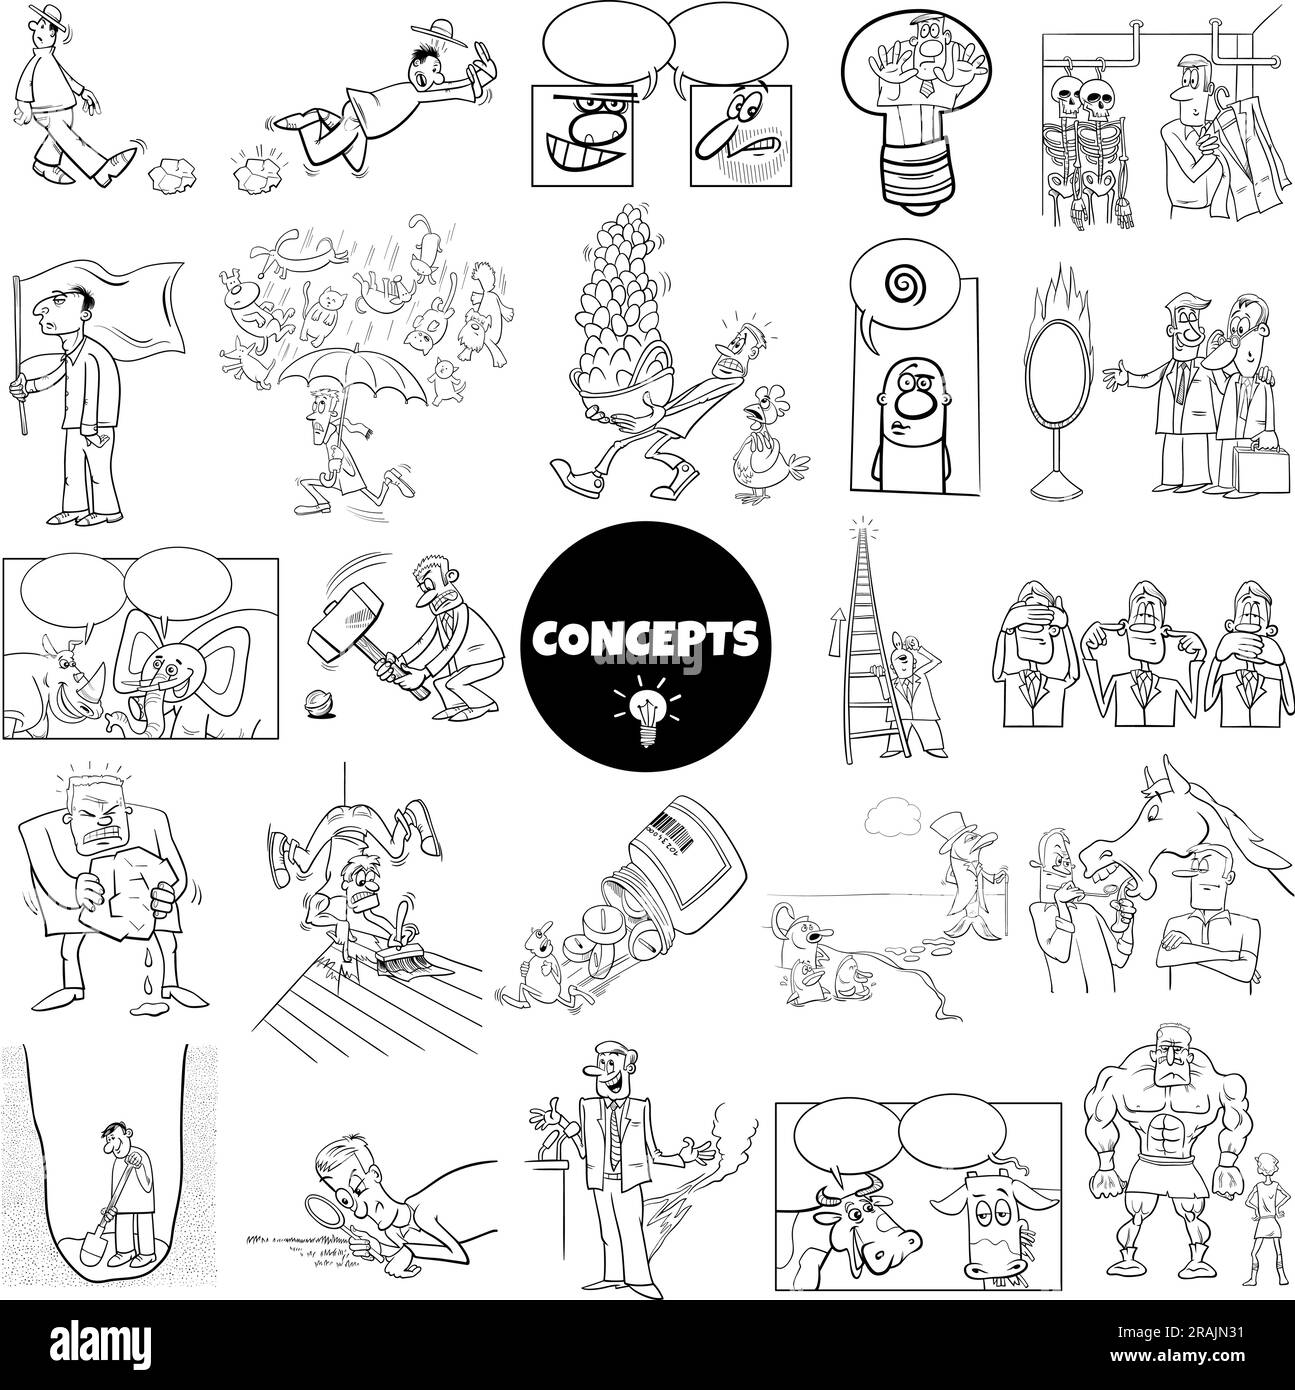 Schwarz-weiß-Abilustrationsset mit humorvollen Cartoon-Konzepten oder Metaphern und Ideen mit Comic-Charakteren Stock Vektor